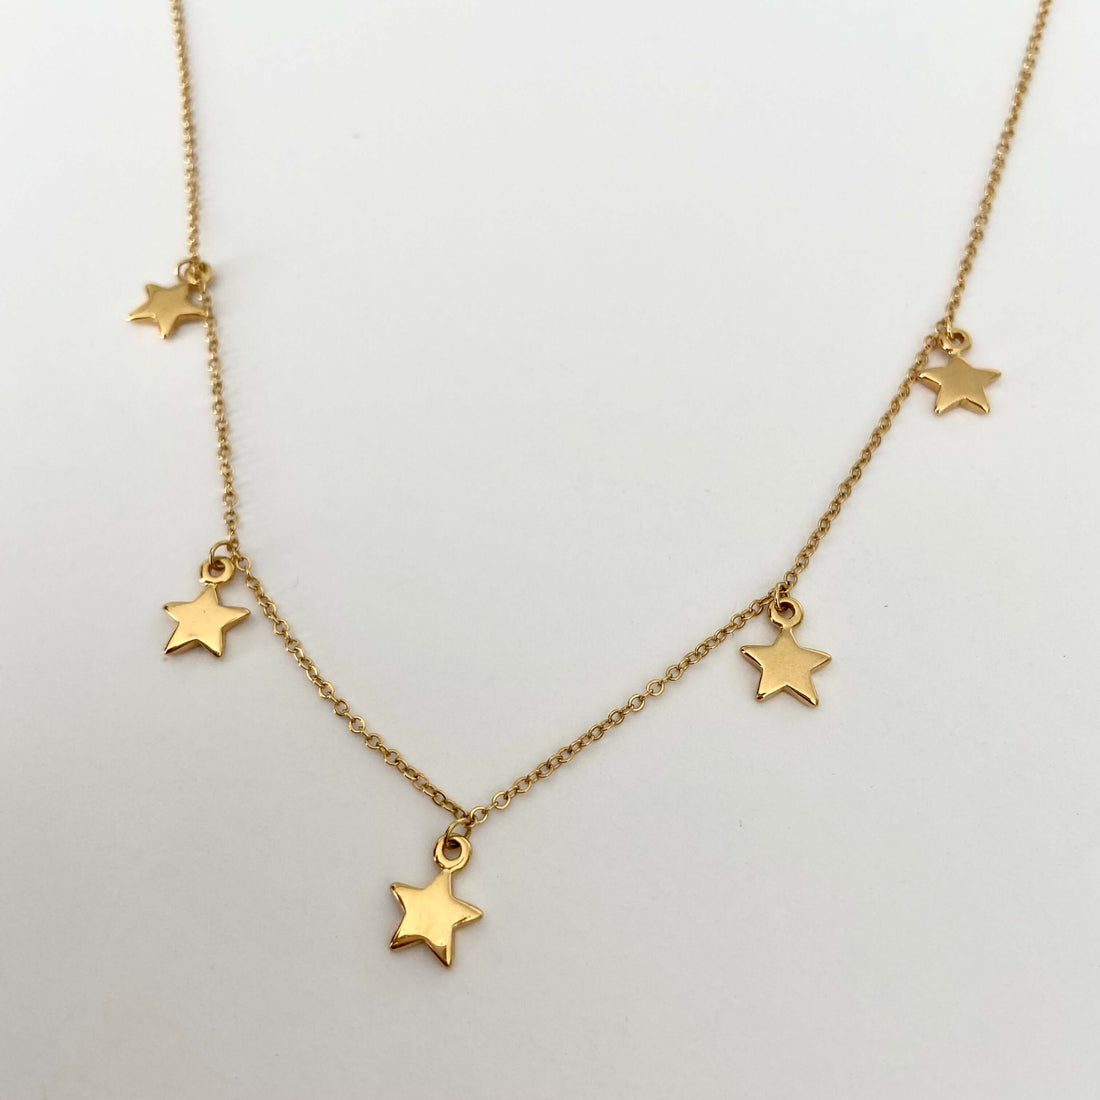 Choker Estrellas - Muun Jewelry - Joyería -Chapa de Oro 22K